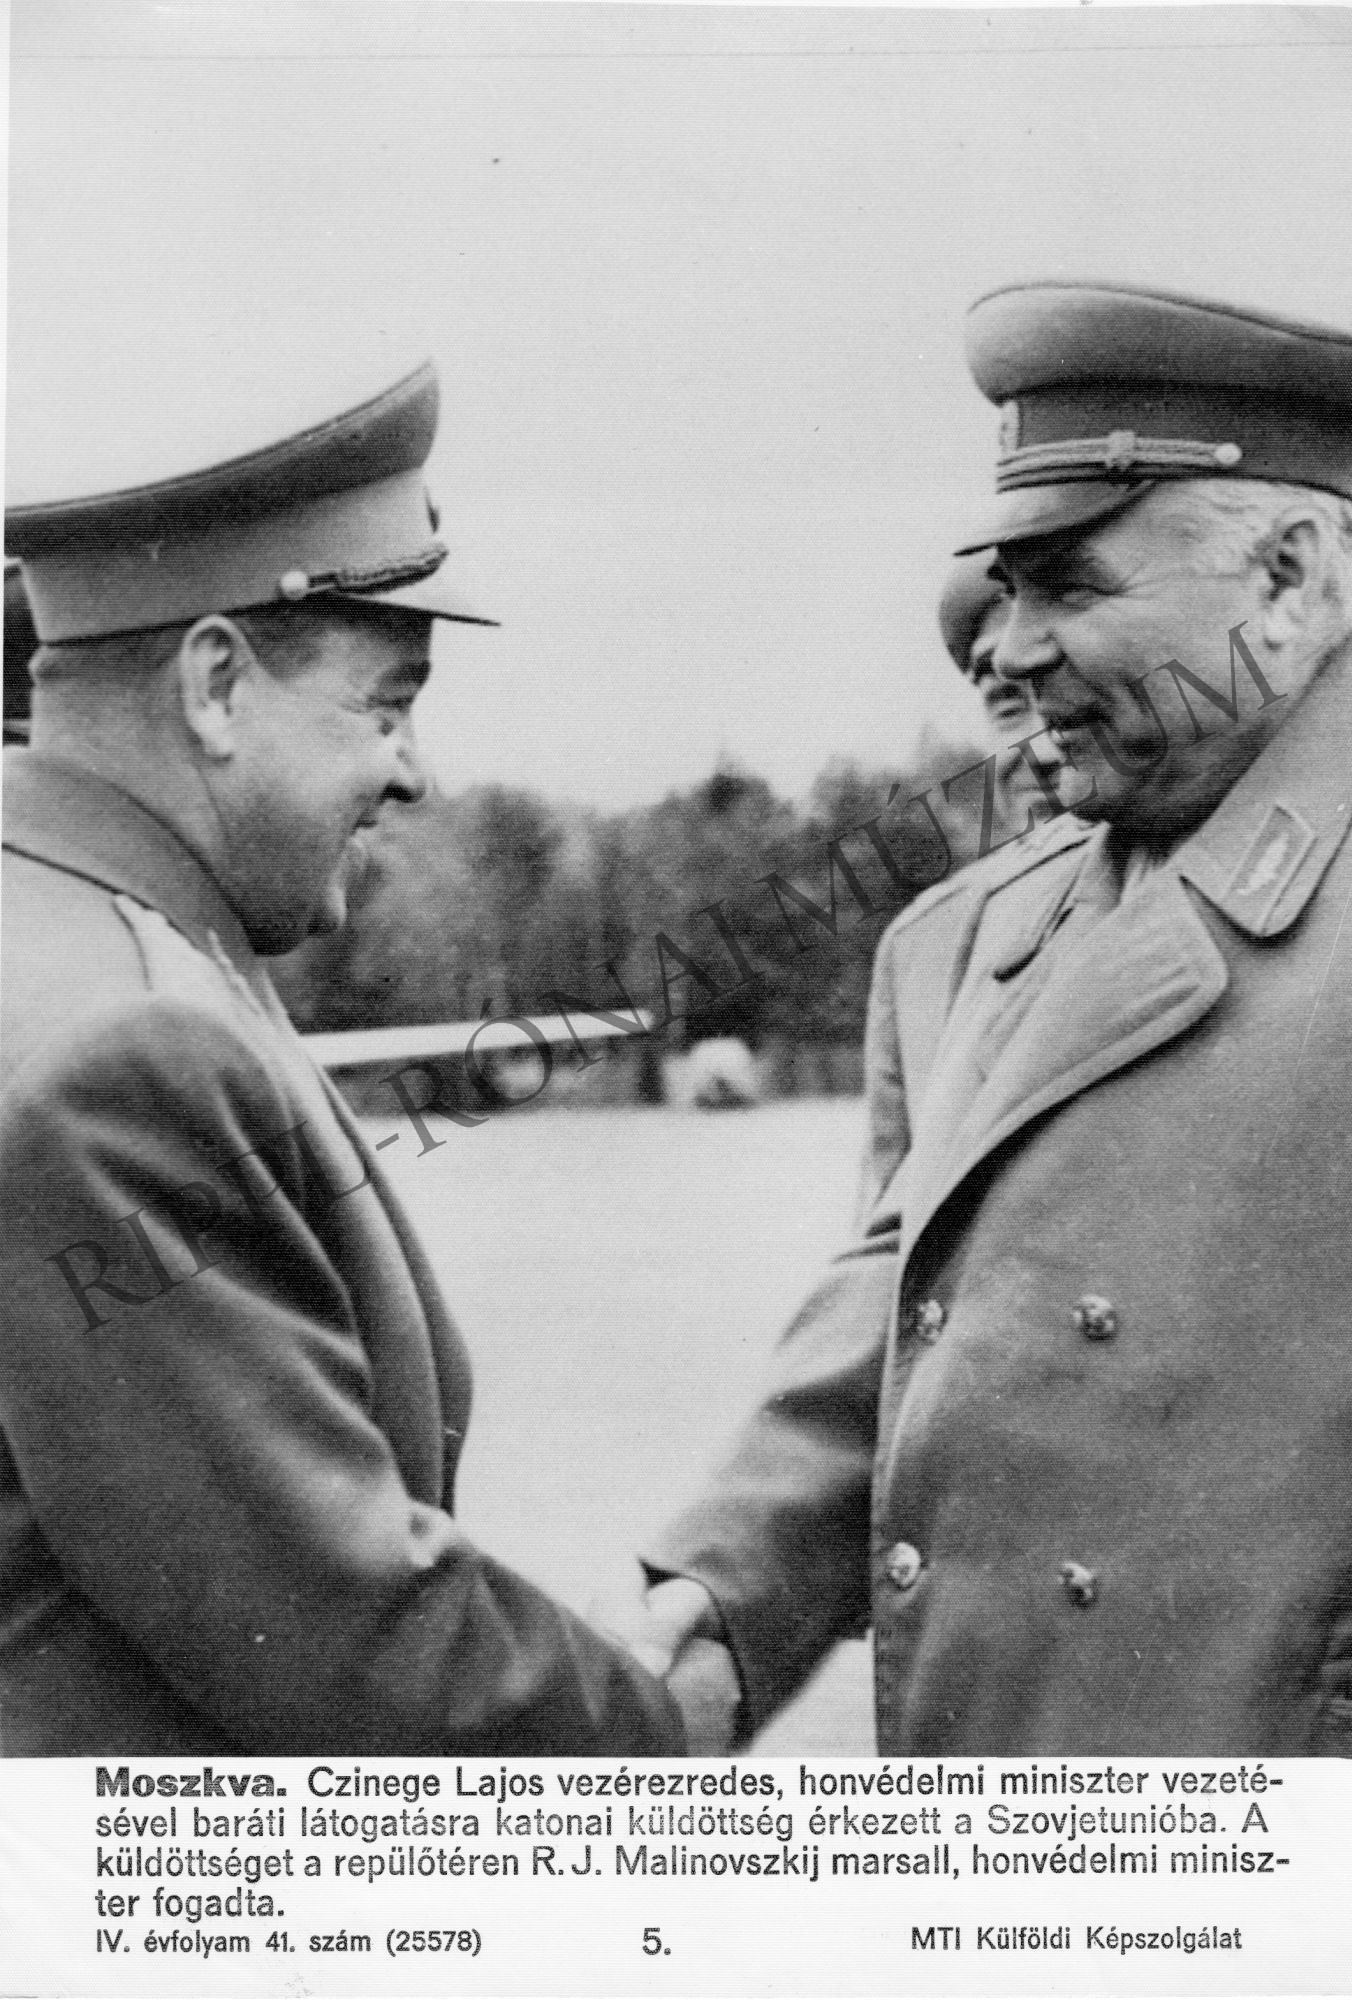 Czinege Lajos vezérezredes, honvédelmi miniszter vezetésével baráti látogatásra katonai küldöttség érkezett a Szovjetunióba. A képen Czinege és Malinovszkij mar (Rippl-Rónai Múzeum CC BY-NC-SA)